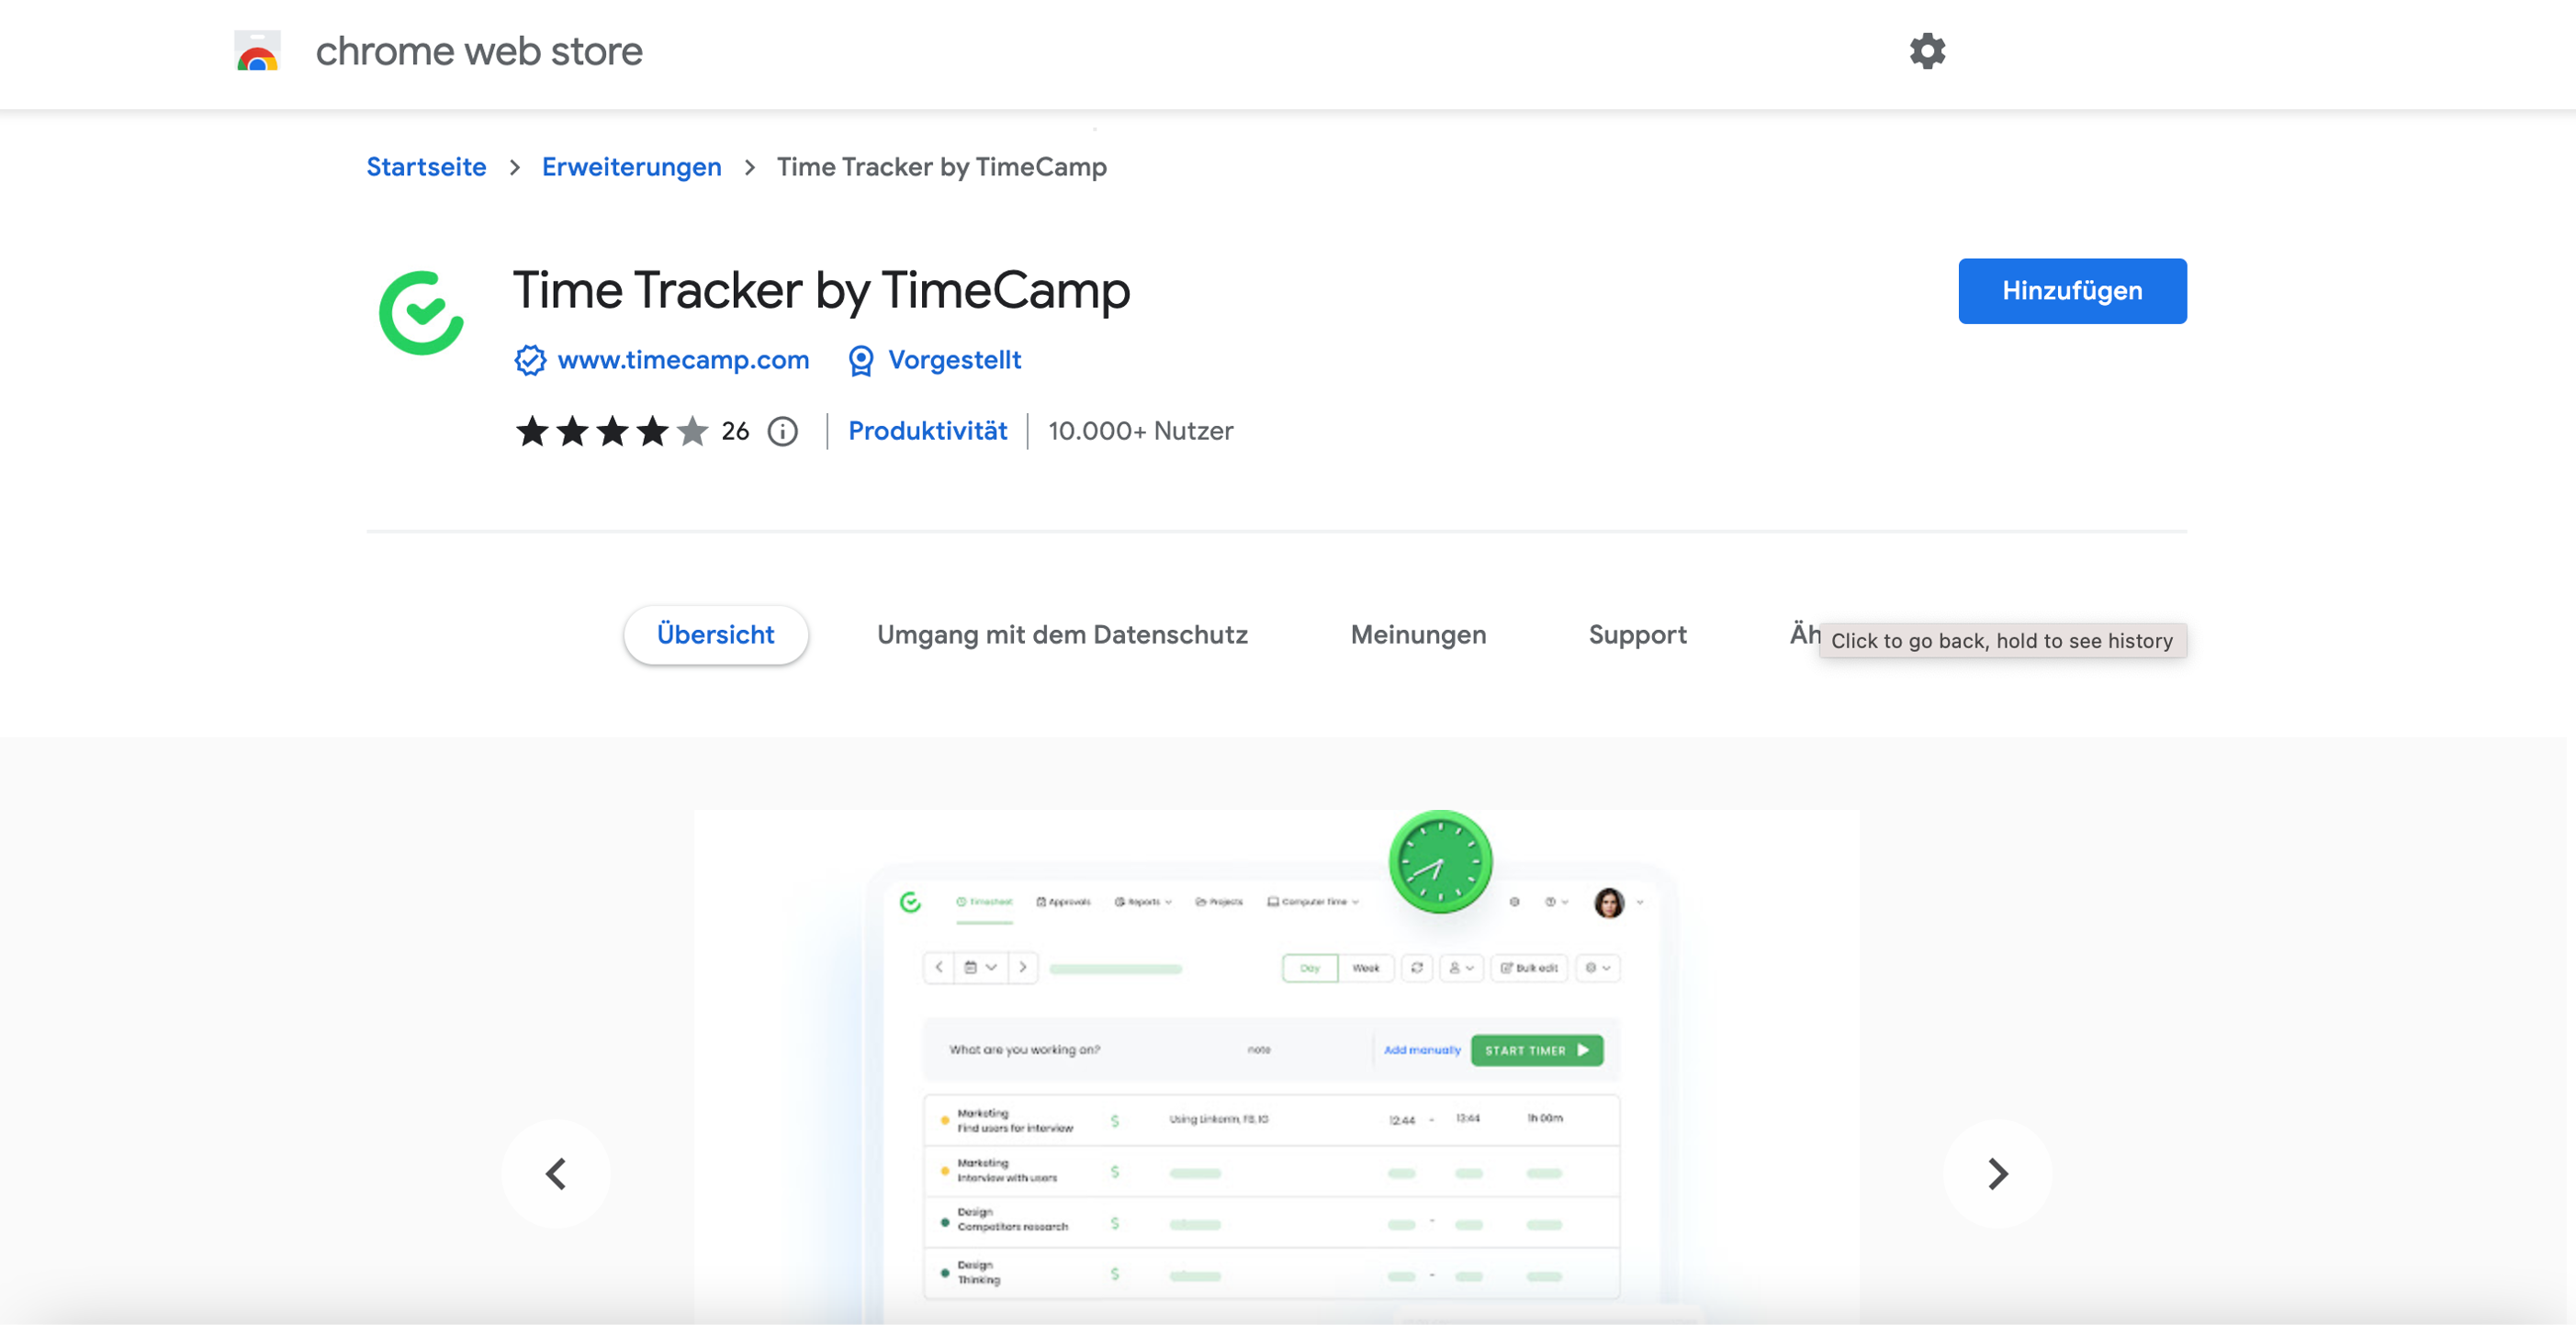 TimeCamp Erweiterung im Google Chrome Shop